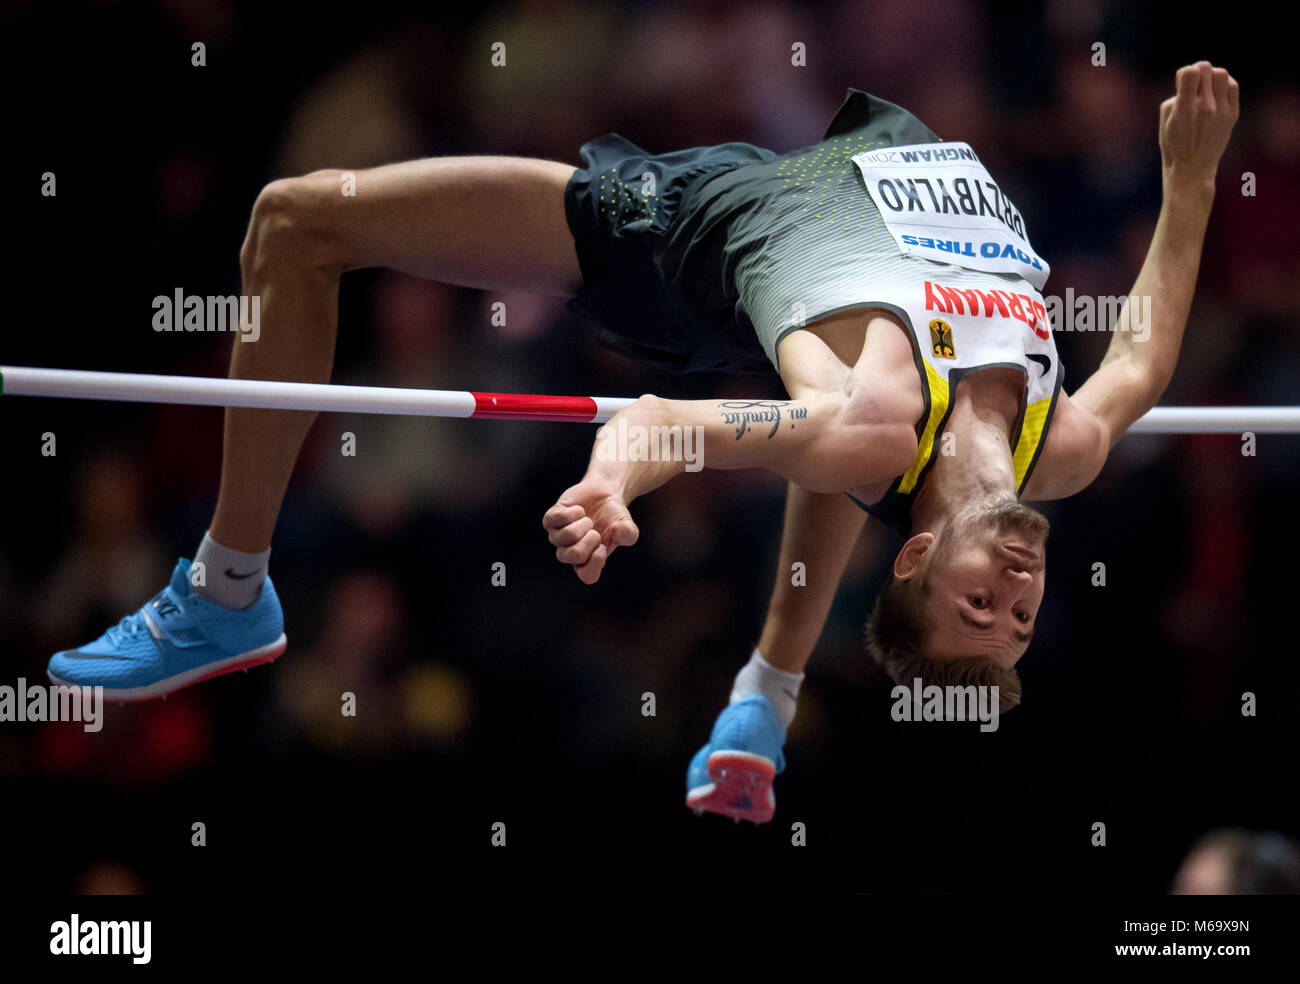 01 mars 2018, Grande-Bretagne, Birmingham : Championnats du monde en salle d'ATHLÉTISME : Mateusz Przybylko d'Allemagne pendant le saut. Photo : Sven Hoppe/dpa Banque D'Images